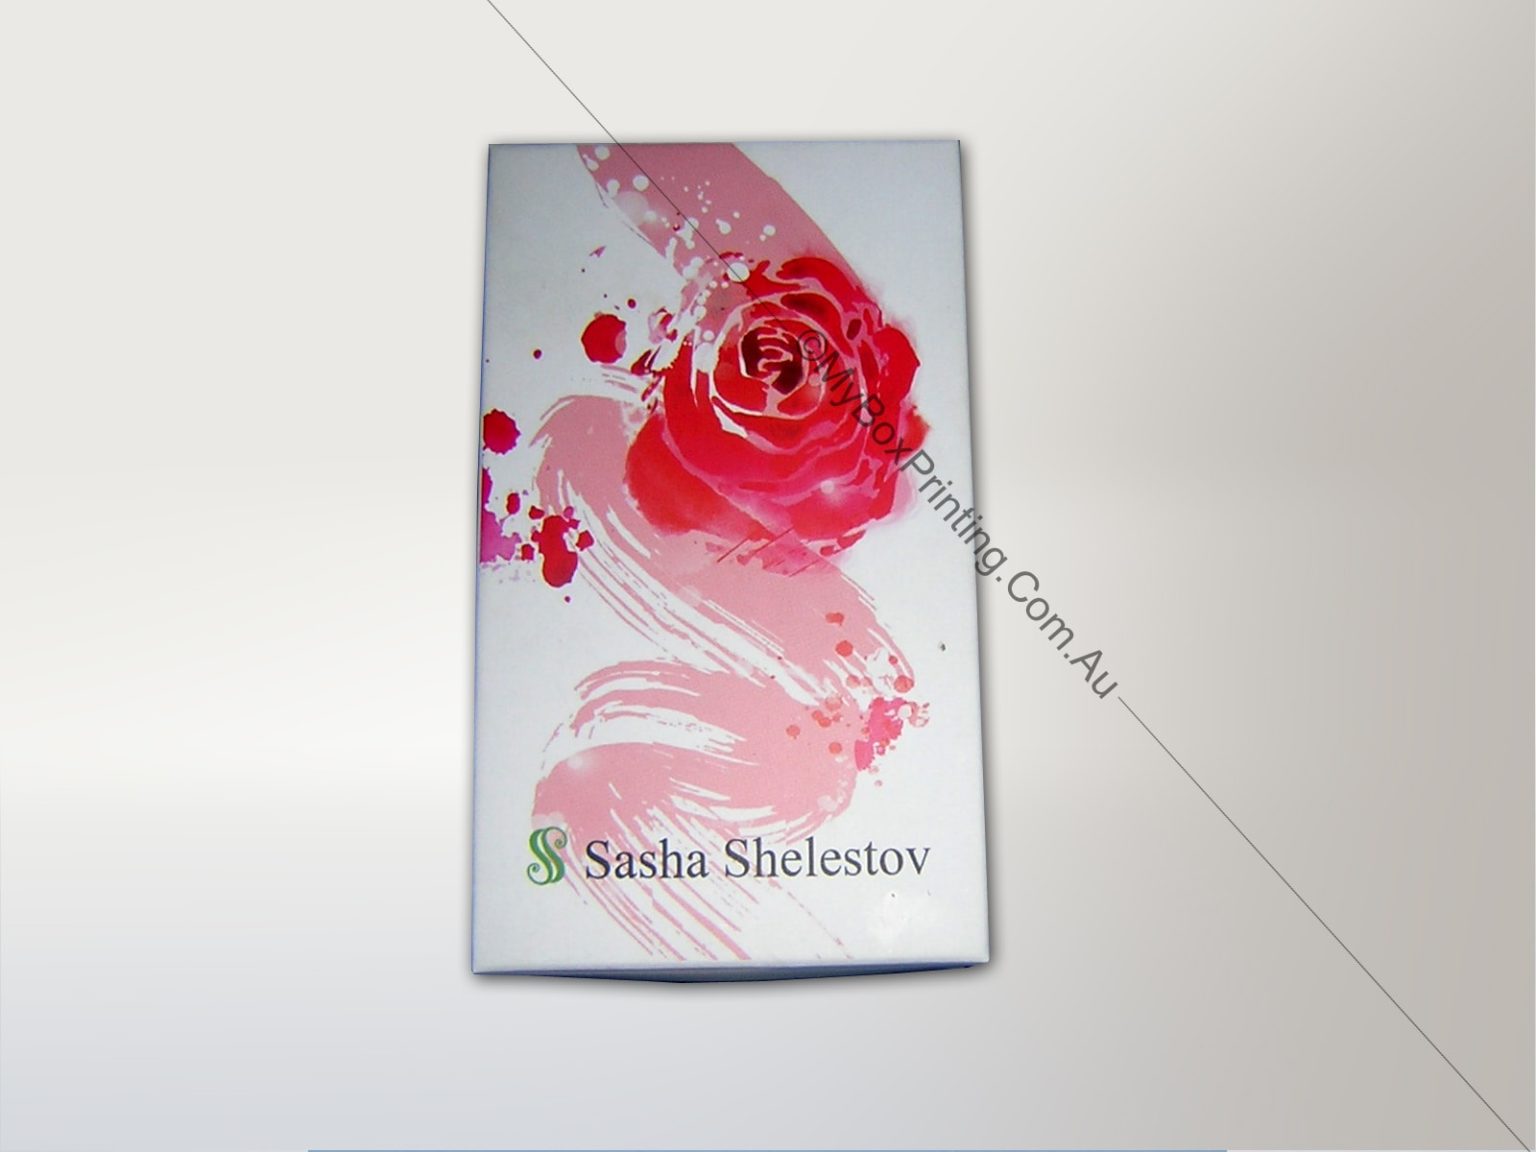 sasha shelectov - my box printing